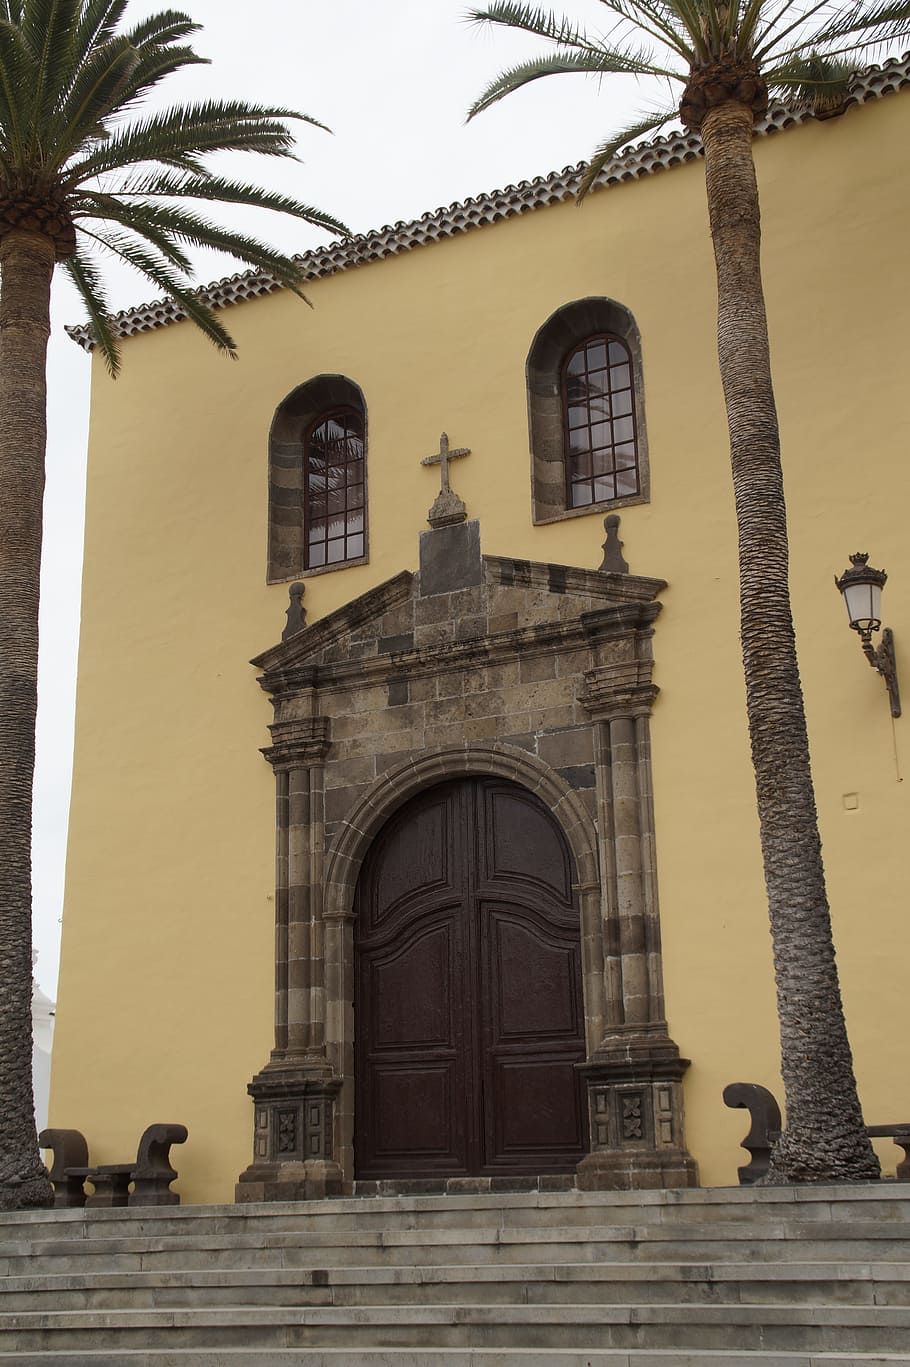 Garachico, Tenerife, Monastery, Church, monastery church, mediterranean, flair, architecture, building, mediterranean flair